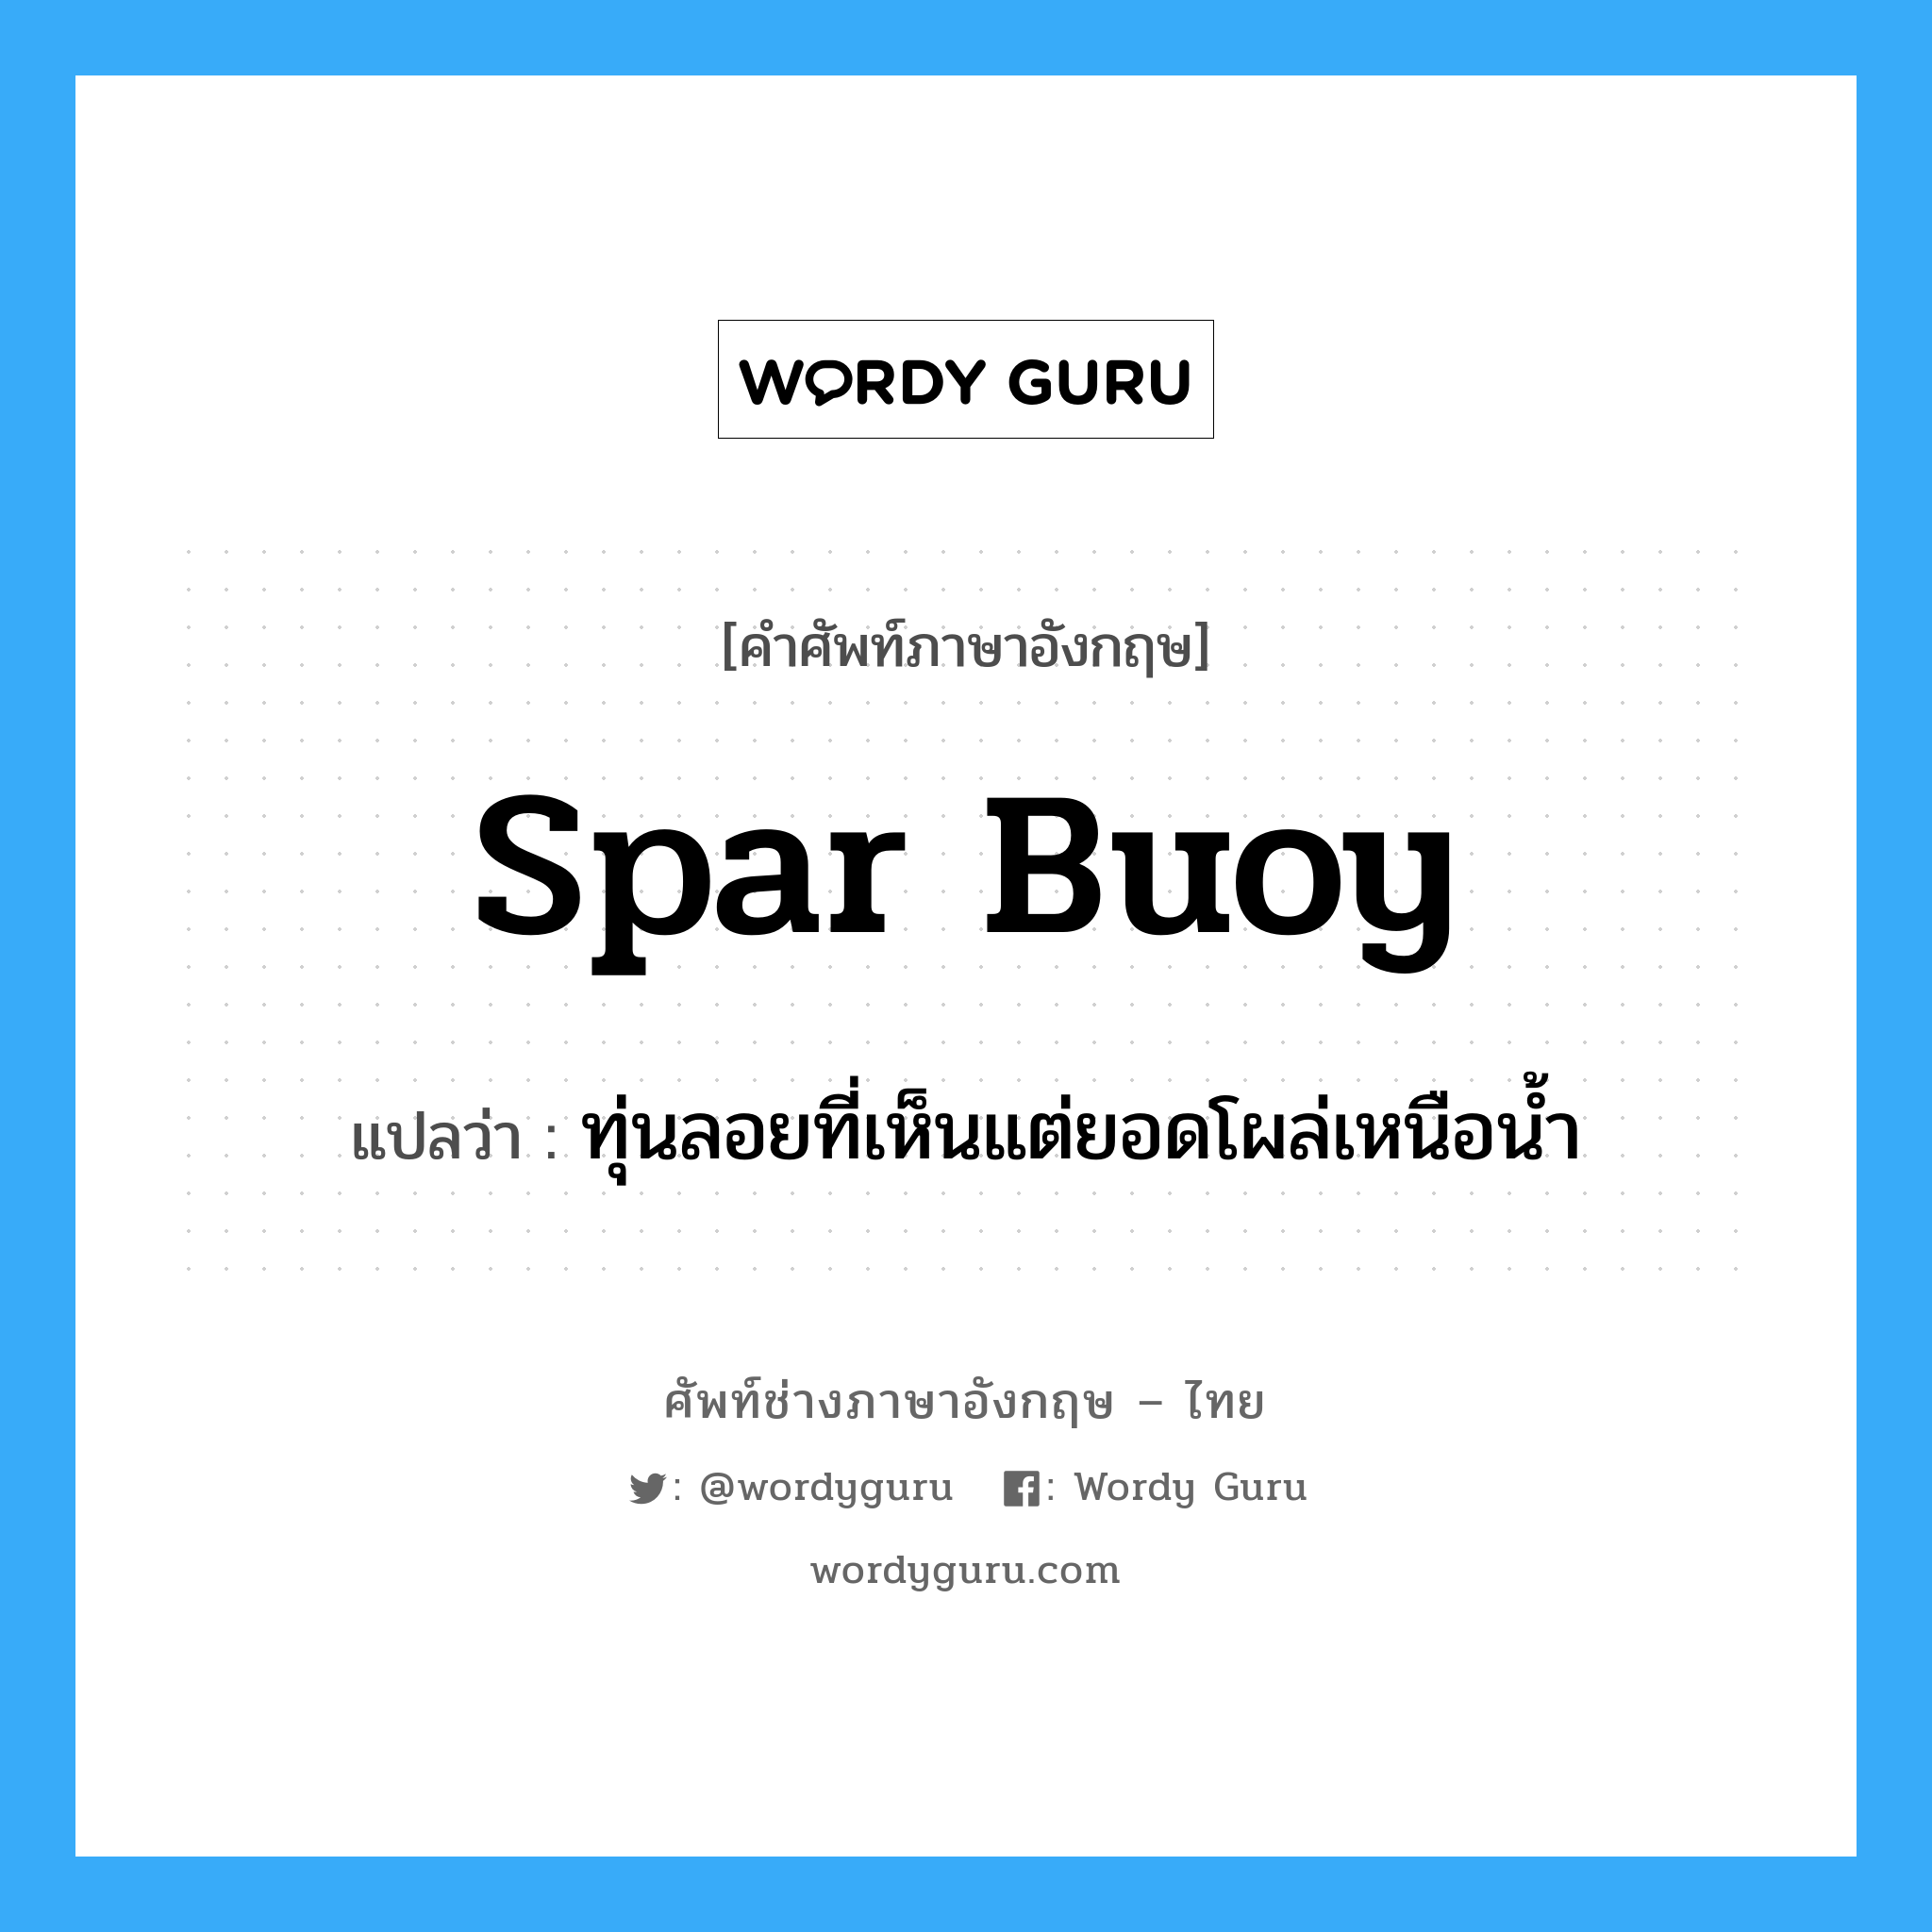 spar buoy แปลว่า?, คำศัพท์ช่างภาษาอังกฤษ - ไทย spar buoy คำศัพท์ภาษาอังกฤษ spar buoy แปลว่า ทุ่นลอยที่เห็นแต่ยอดโผล่เหนือน้ำ